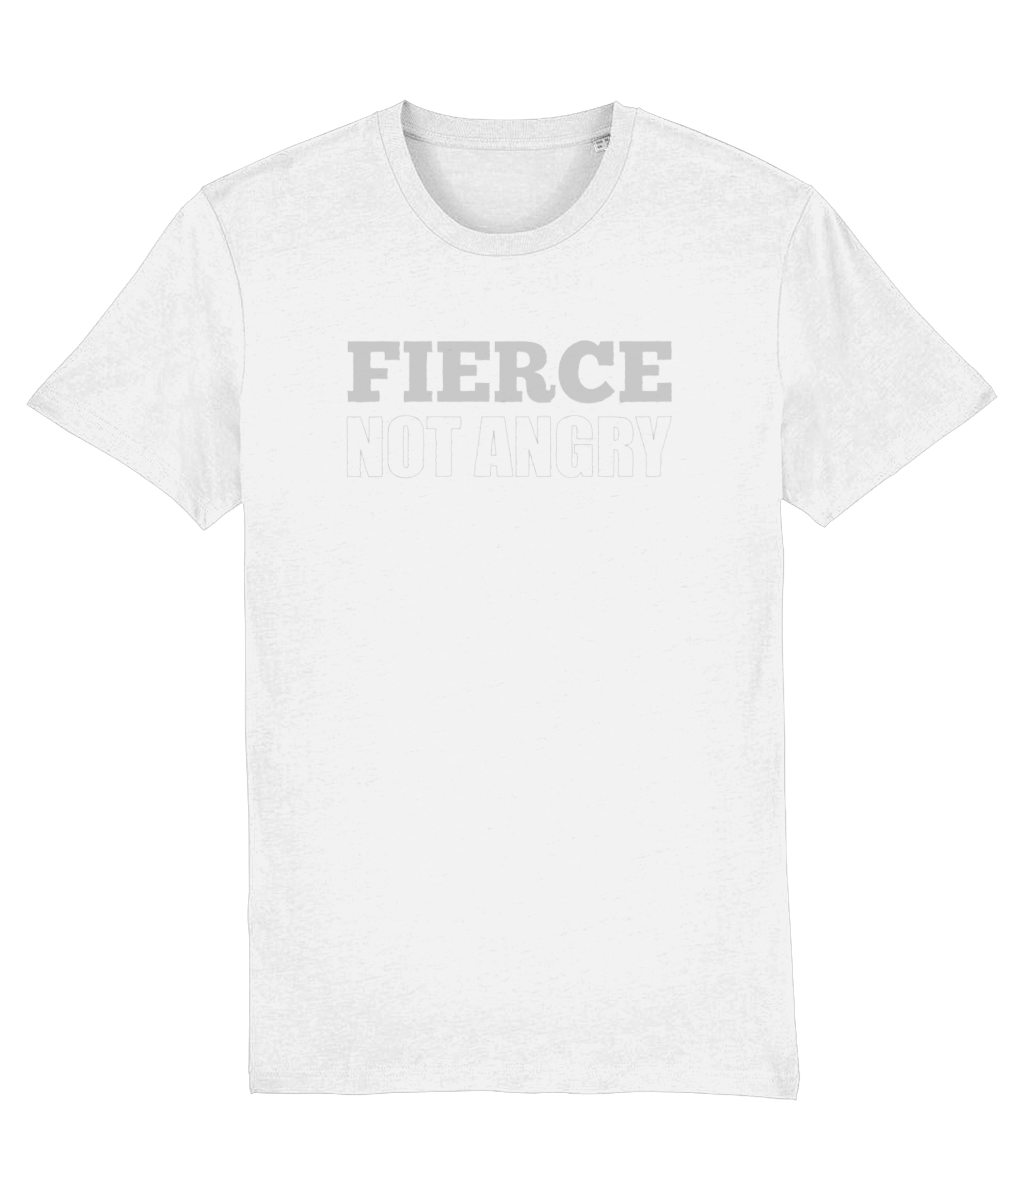 Fierce NOT Angry Organic Cotton T-shirt